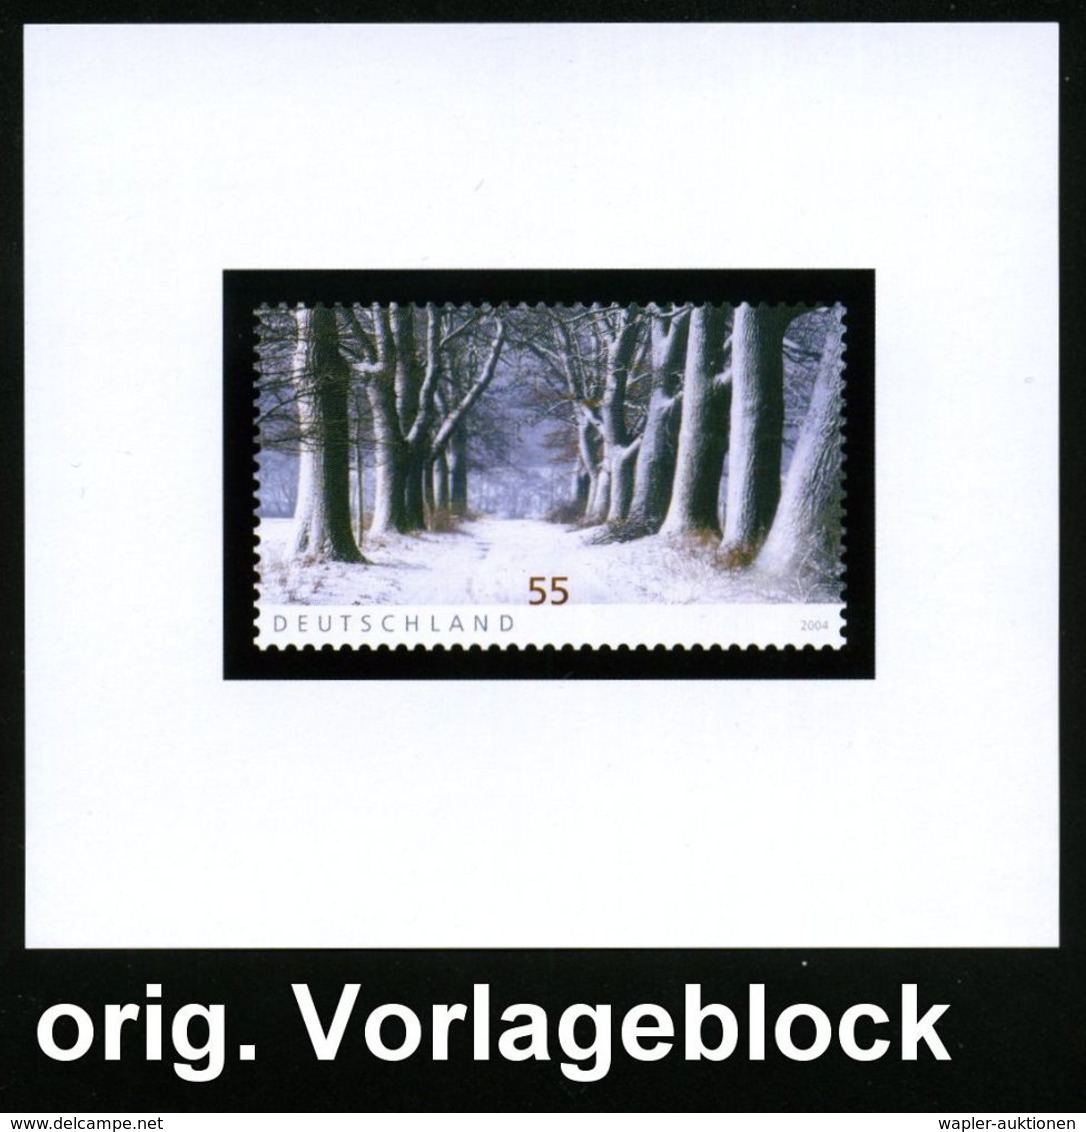 METEOROLOGIE / KLIMA / WETTER : B.R.D. 2004 (Nov.) 55 C. "Winterstimmung" (Eichenallee)  U N G E Z.  Vorlageblock Bundes - Climat & Météorologie